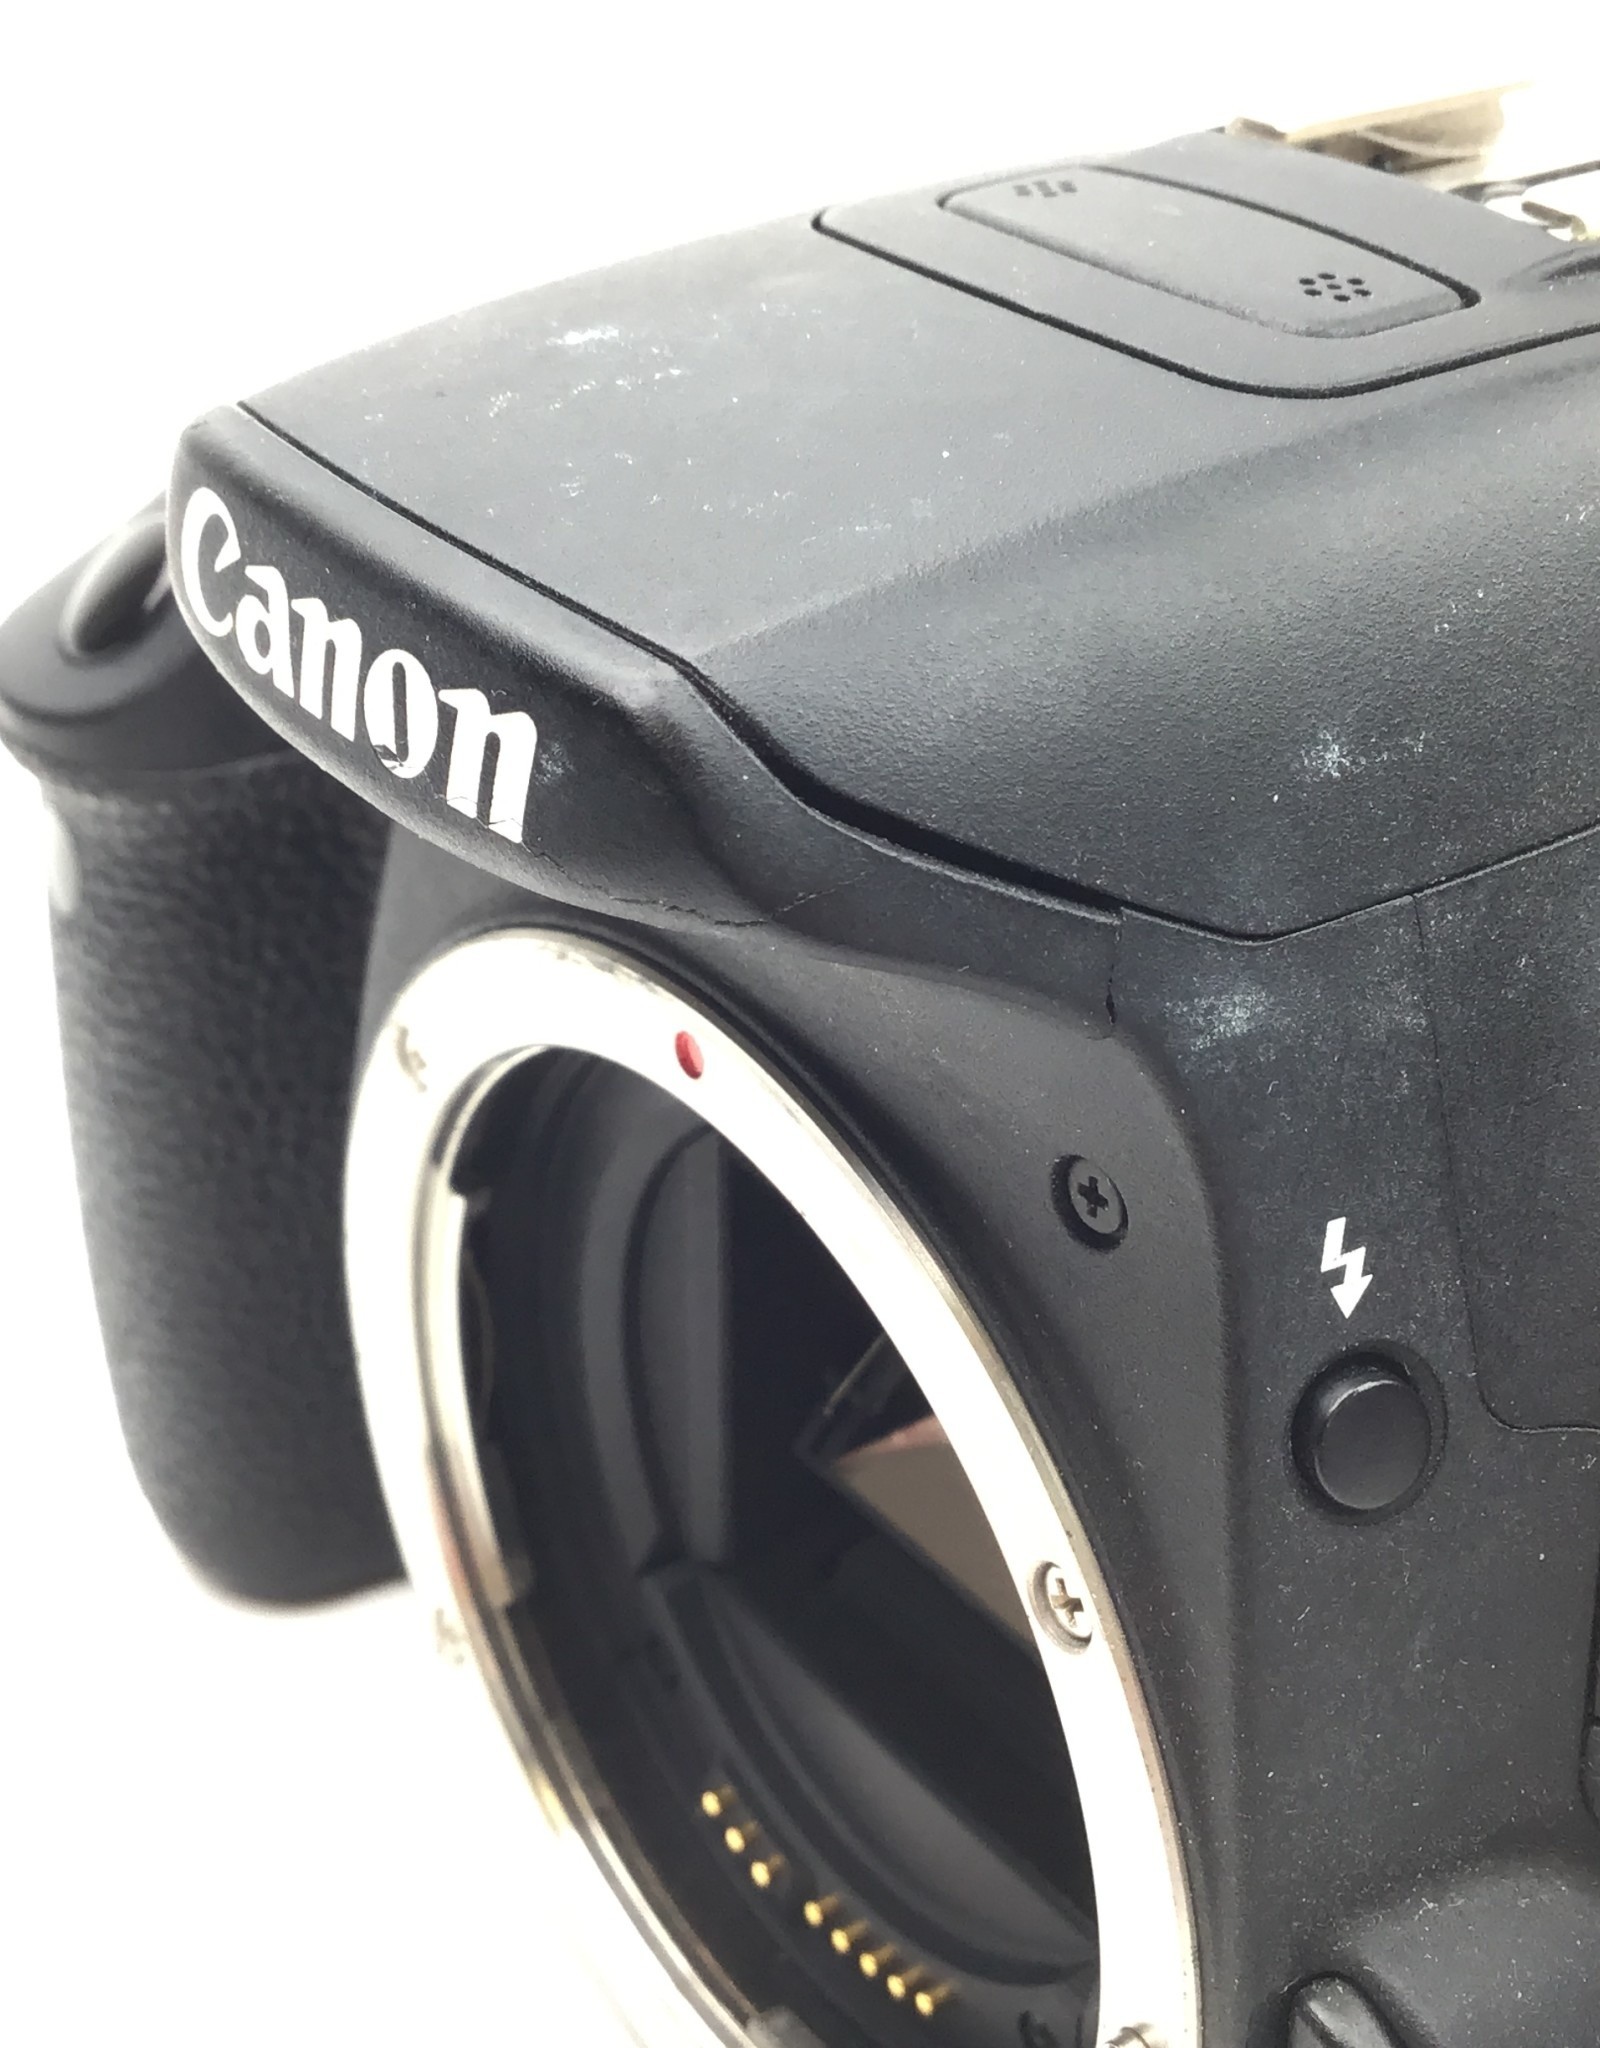 CANON Canon EOS Rebel T5i Camera Body Good